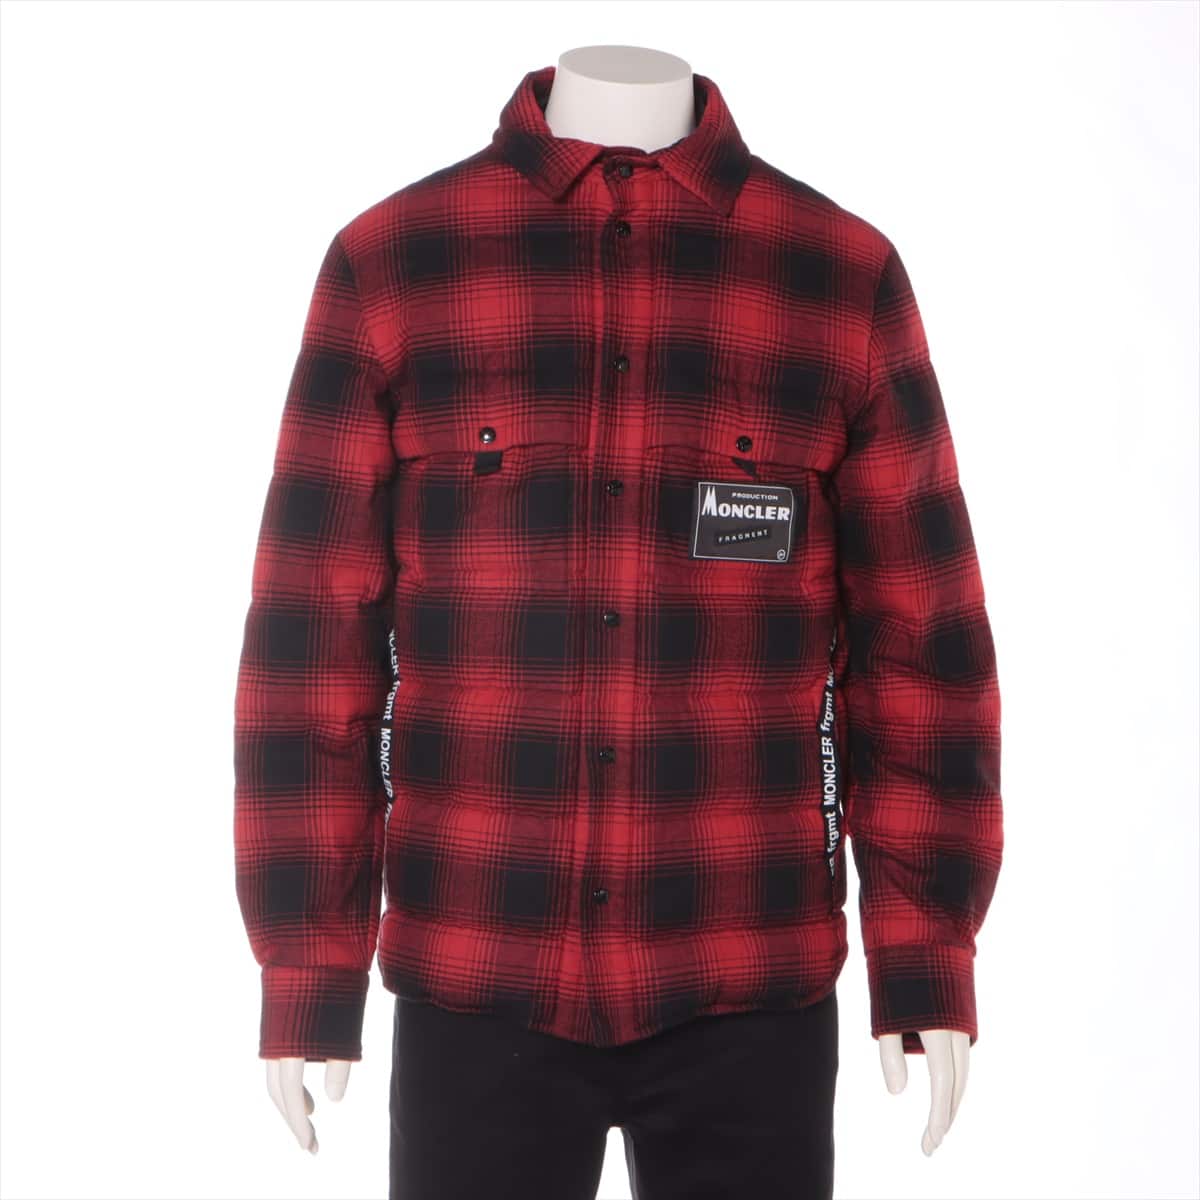 Moncler Genius Fragment DANVER 20 years Cotton & nylon Down jacket 1 Men's Red  Hiroshi Fujiwara Removable hood